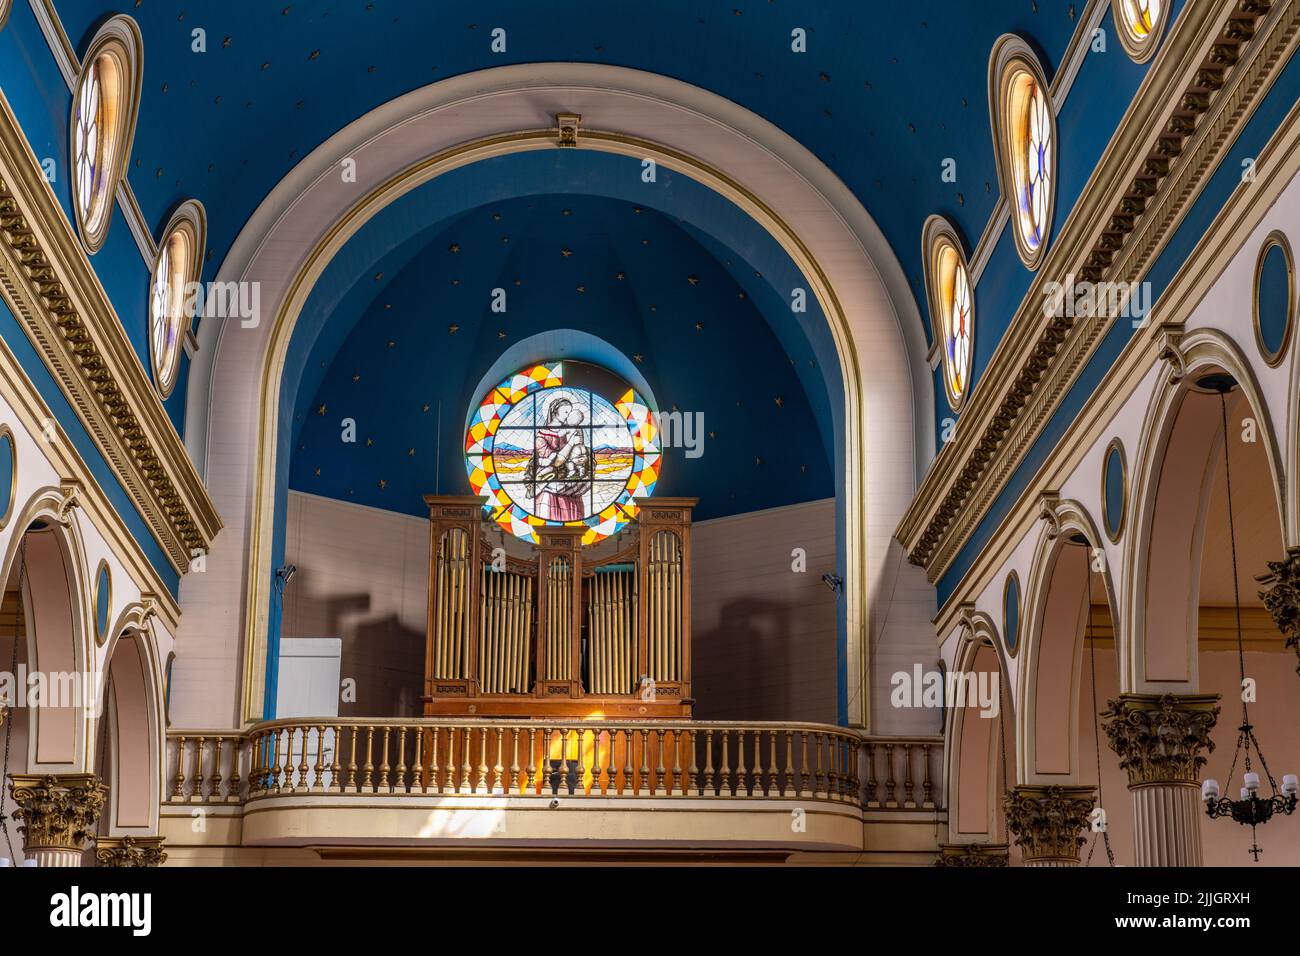 La nef et le loft d'orgue de la Cathédrale de l'Immaculée conception ou Cathédrale de l'Iquique à Iquique, Chili. Banque D'Images